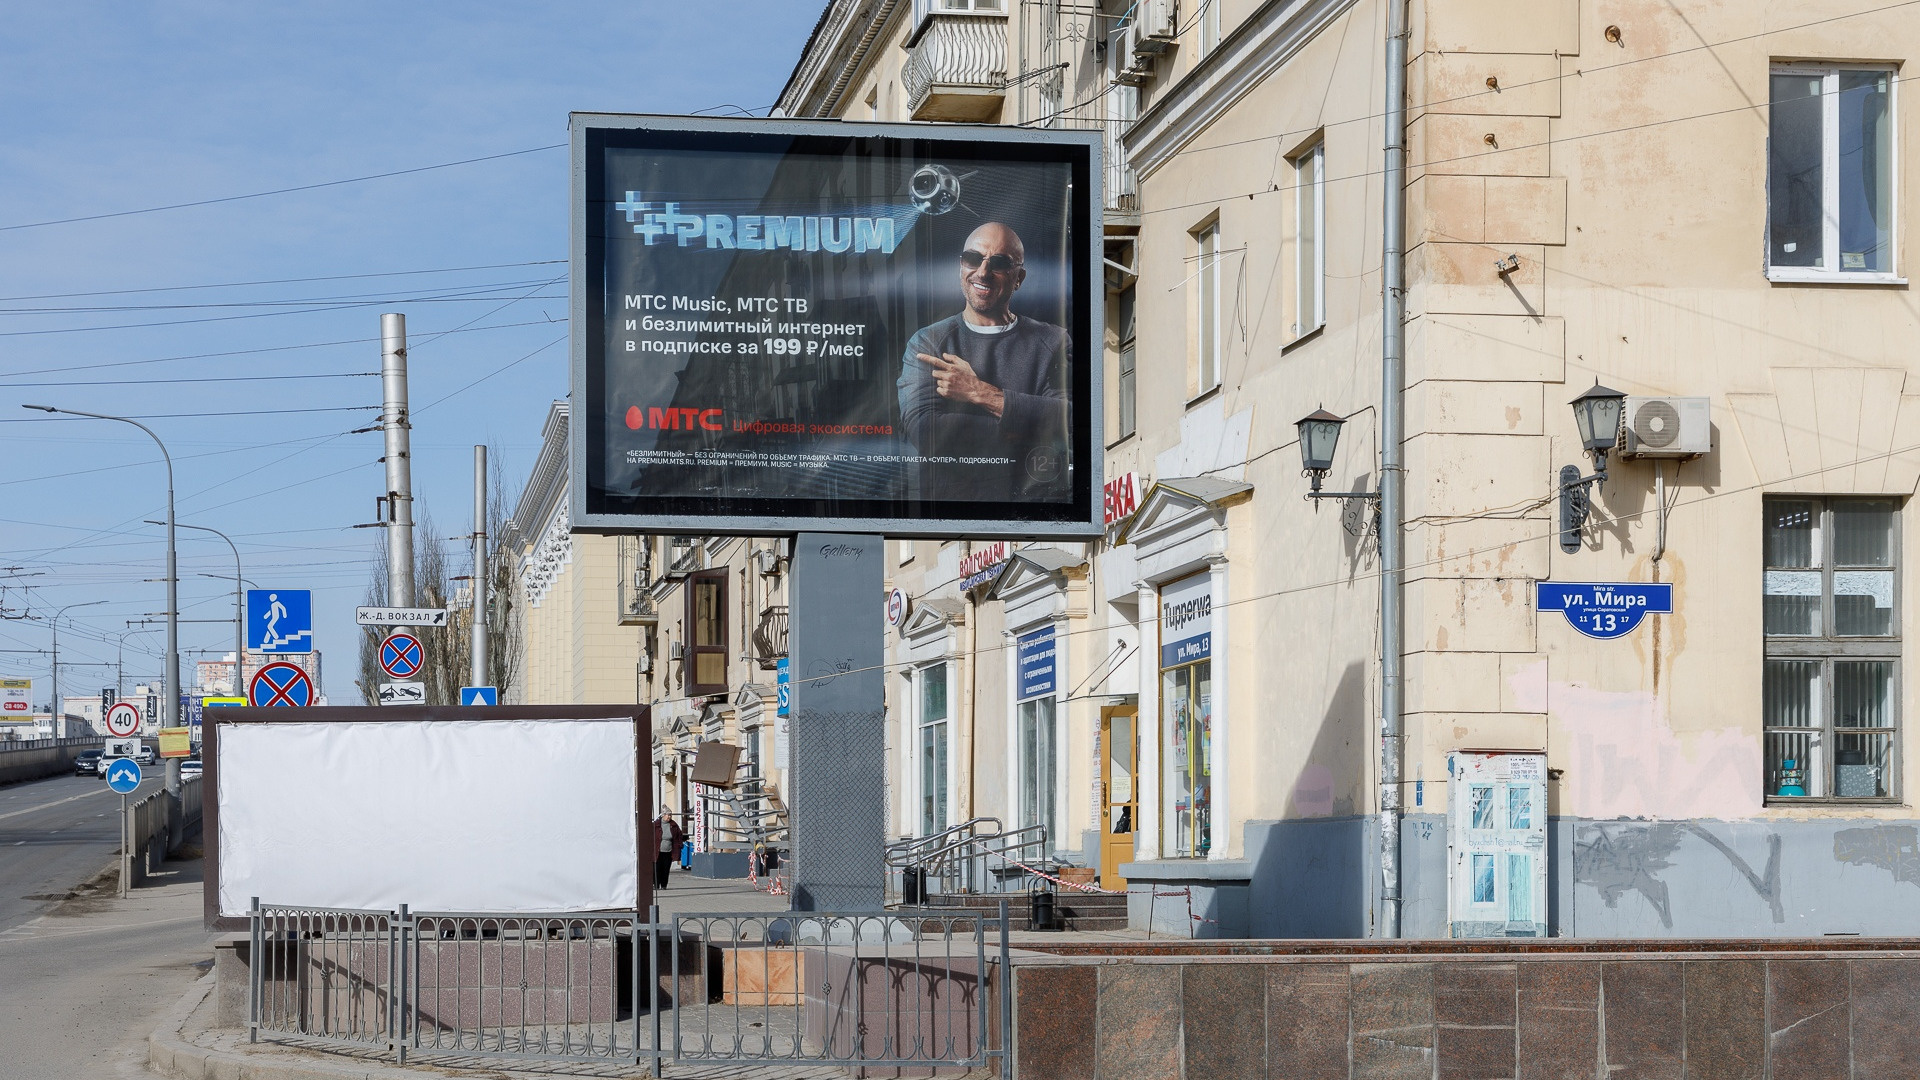 «Не классика архитектуры, а винегрет»: в Волгограде общественник требует очистить центр от рекламы и вывесок